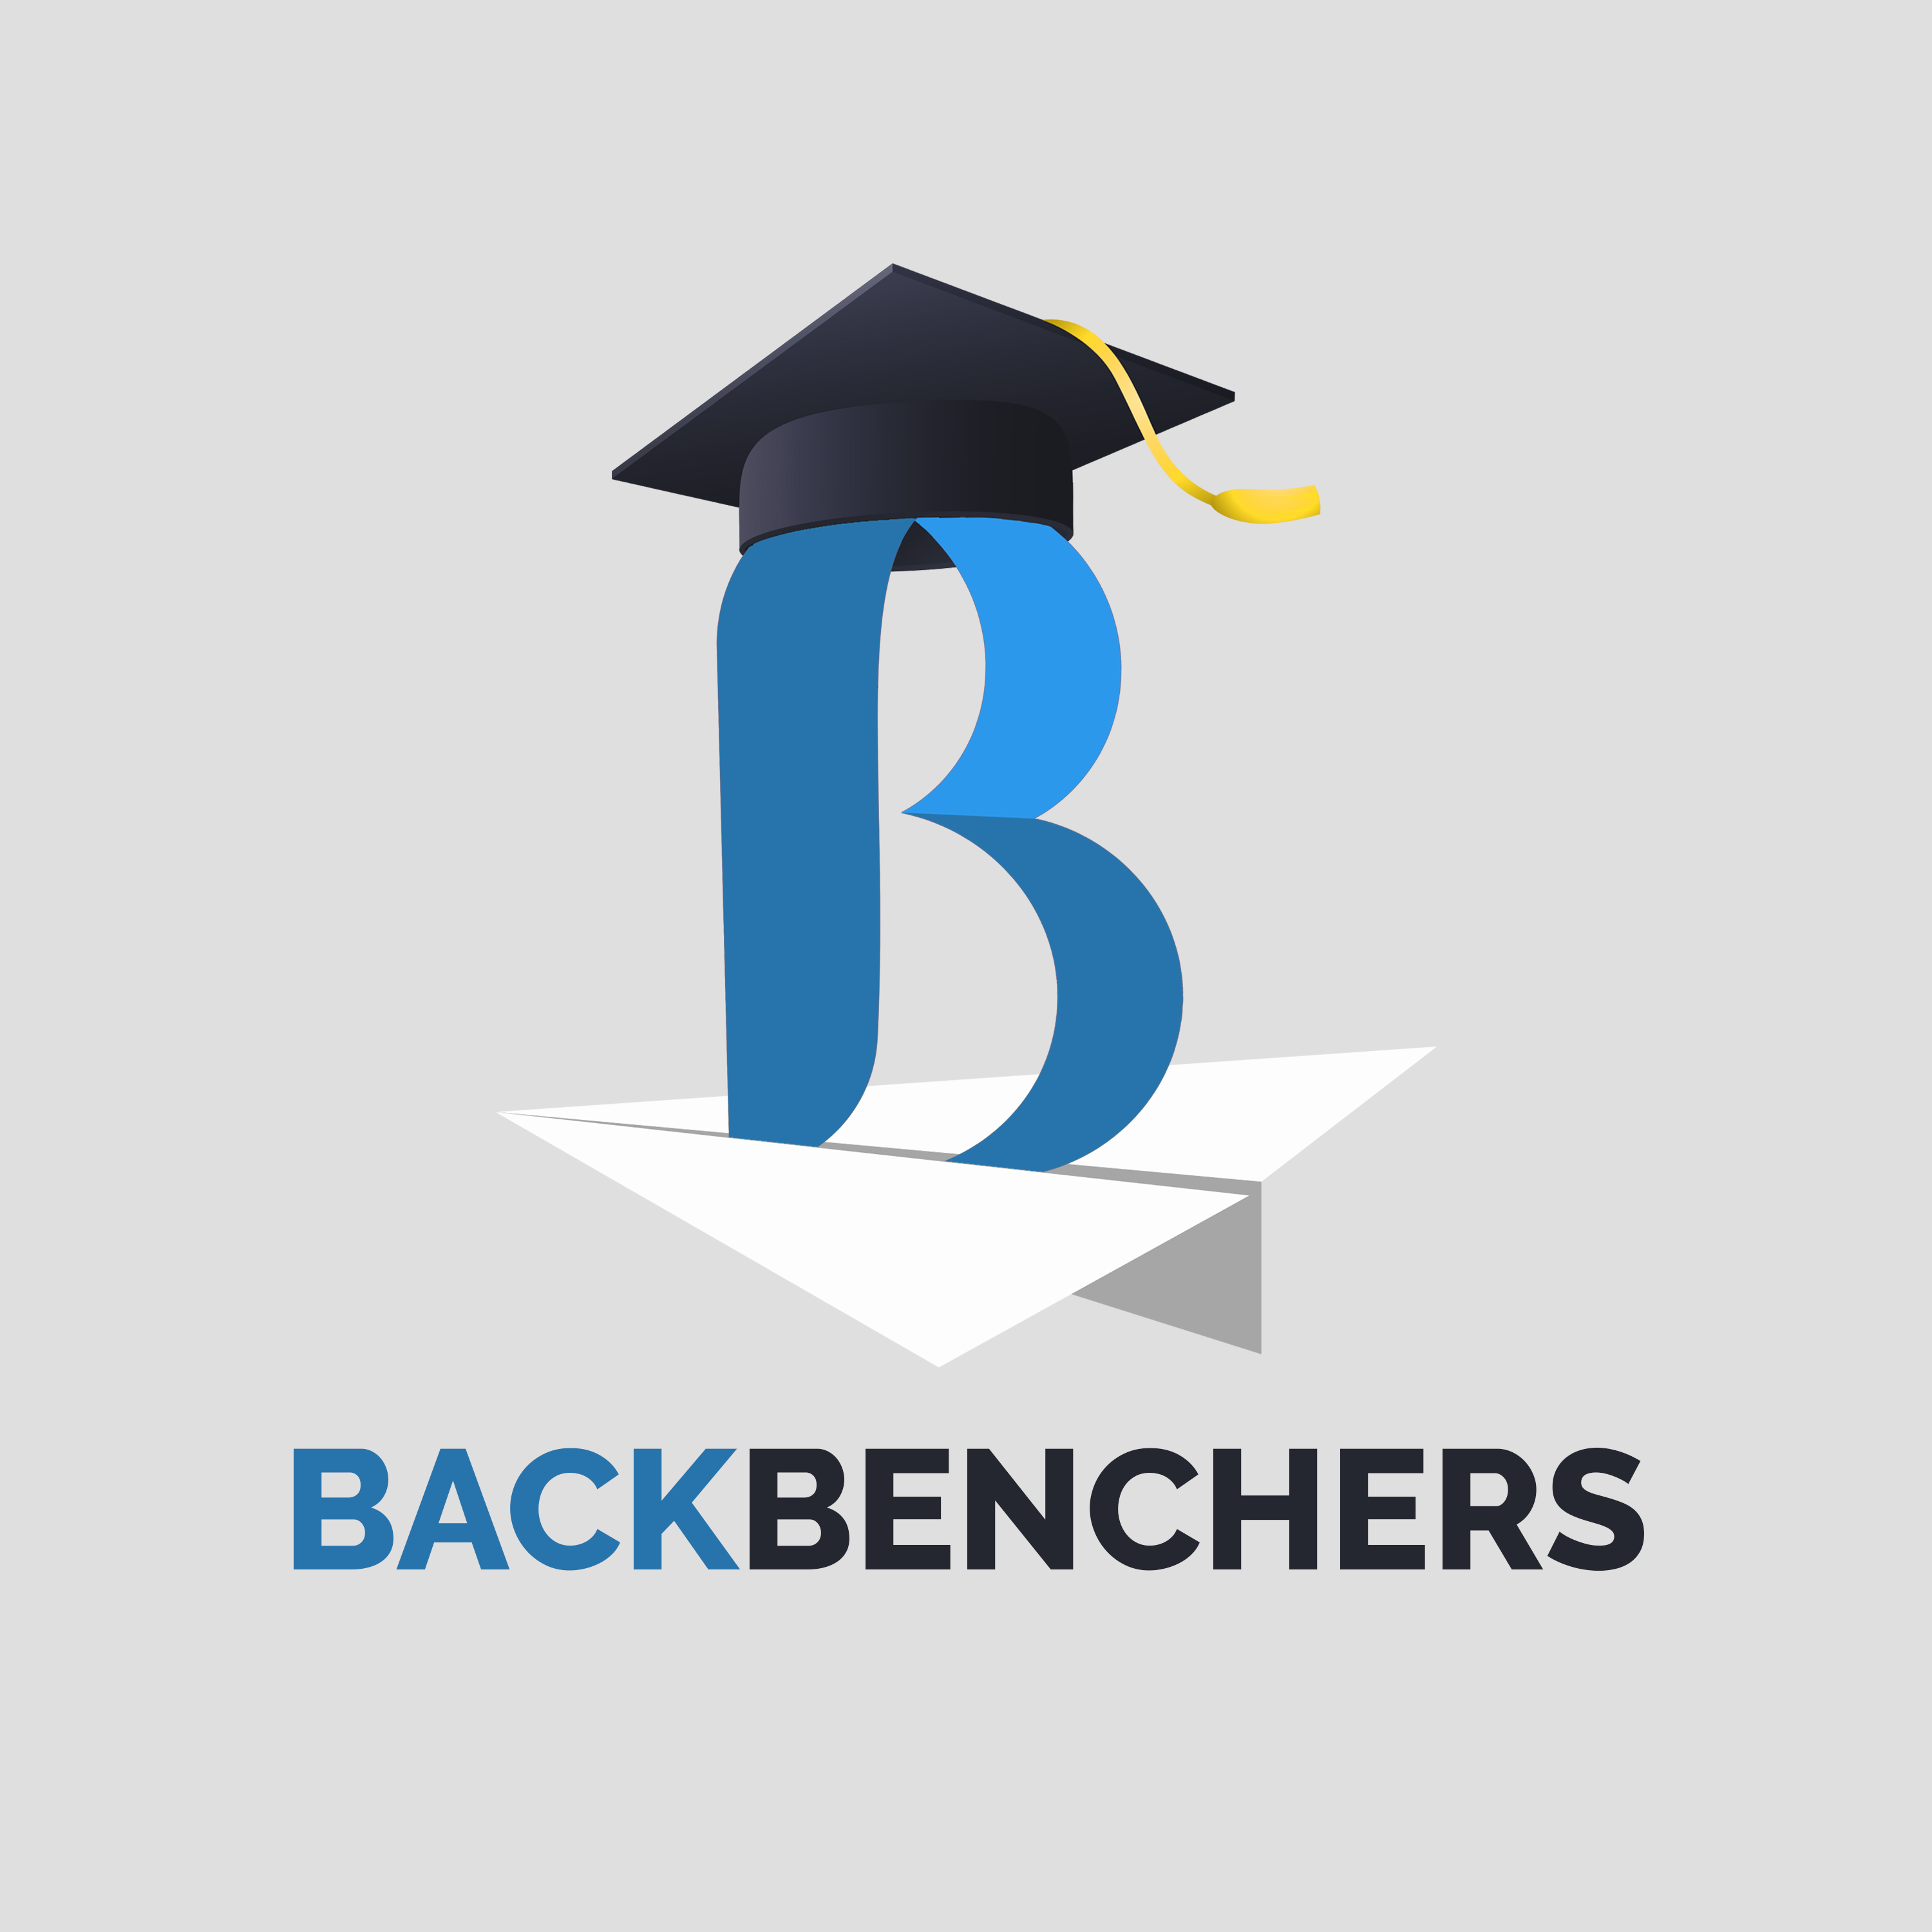 Back Benchers Tshirt Design Template Stock Illustration 1968129334 |  Shutterstock